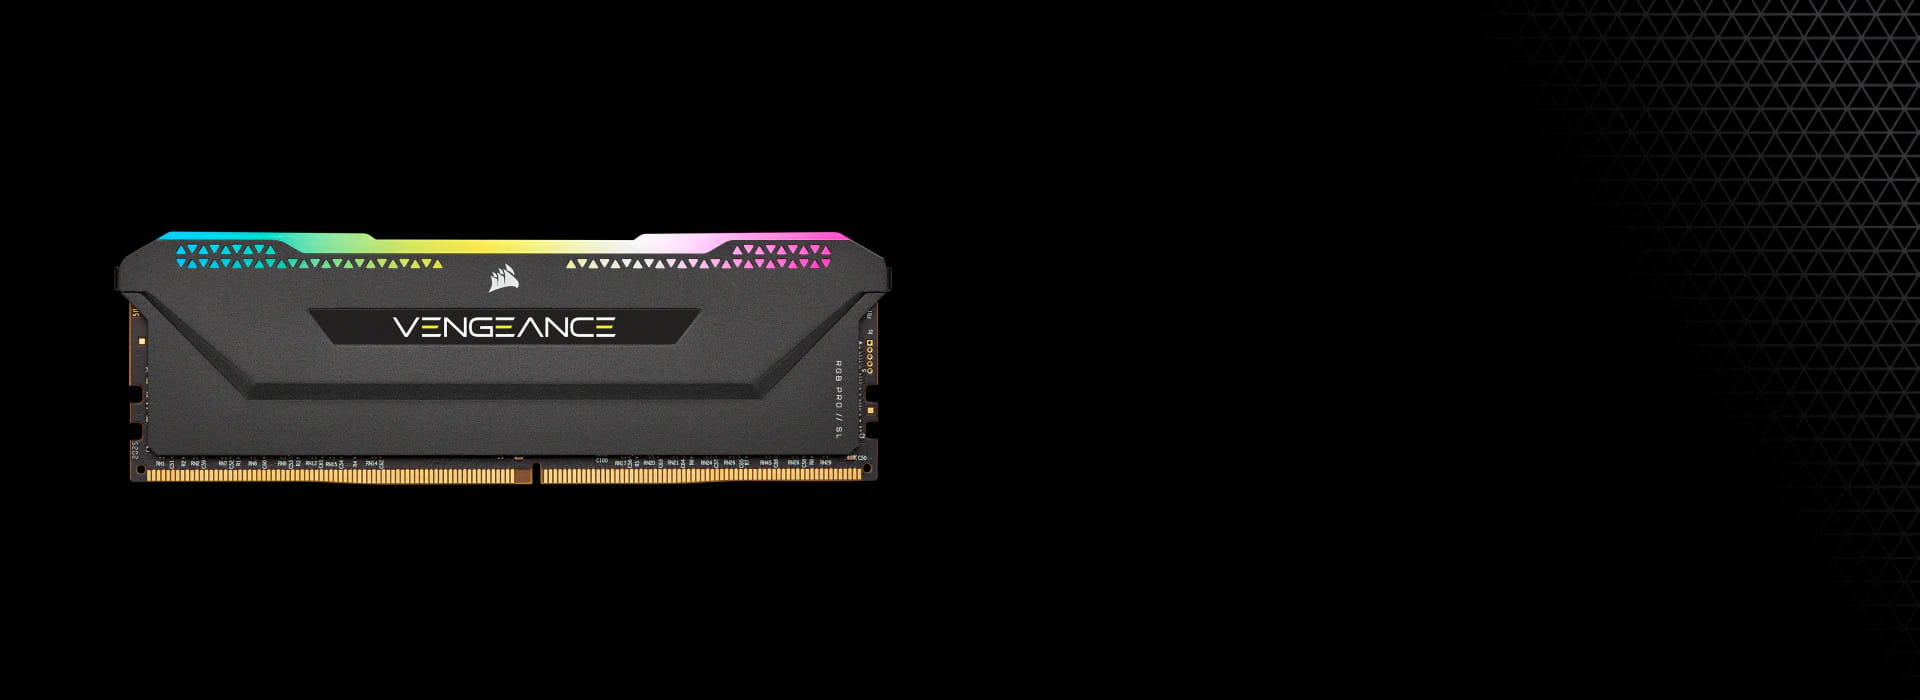 Corsair Vengeance RGB Pro SL 16Go (2x8Go) DDR4 3600MHz - Mémoire PC Corsair  sur